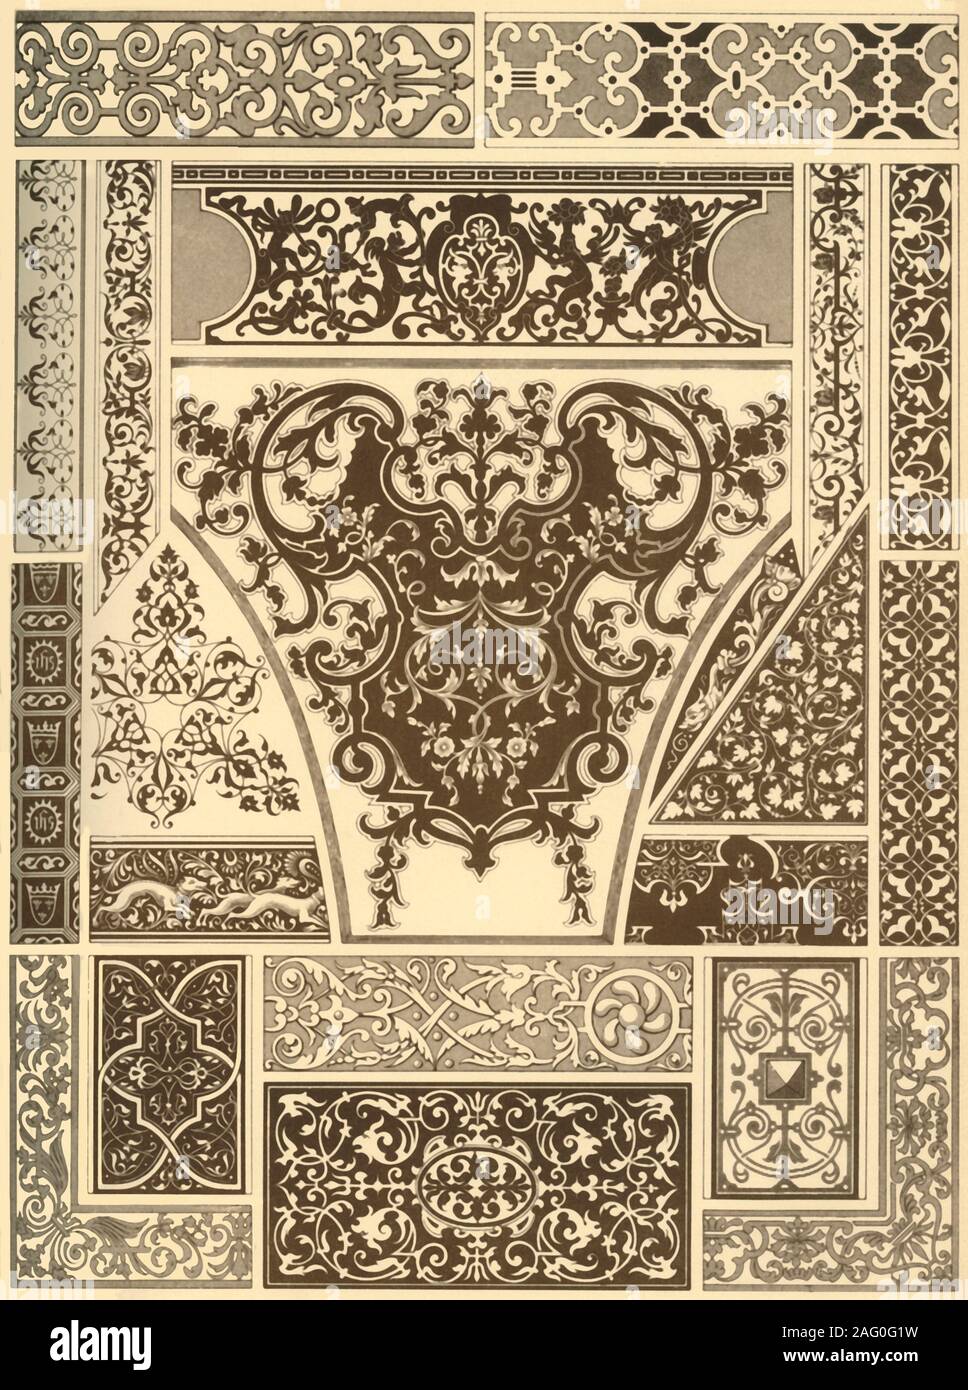 Ornement Renaissance française sur le bois et les métaux, (1898). 'Fig 1 : Boule travaillent à partir d'une horloge dans le Musée vaterl&# xe4;ndischer Altert&# xfc;mer à Stuttgart, (Anglais). Figs 2 et 3 : travail en bois marqueté d'ébène et d'ivoire à partir d'une table, ibid., (allemand). Fig 4 : travail en bois marqueté d'une tente-lit dans la salle dorée à Urach, (allemand). Figs 5 et 6 : travail en bois marqueté sur un mur de plus en plus profondément dans le palais de justice de Dijon, (Anglais). Fig 7 : travail en bois marqueté d'une poitrine à Ravensburg, (allemand). Fig 8 : marqueterie d'argent sur un bouclier d'or dans le trésor royal à Munich, (allemand). Fig 9 : l'ivoire incrusté de travailler sur un pi Banque D'Images